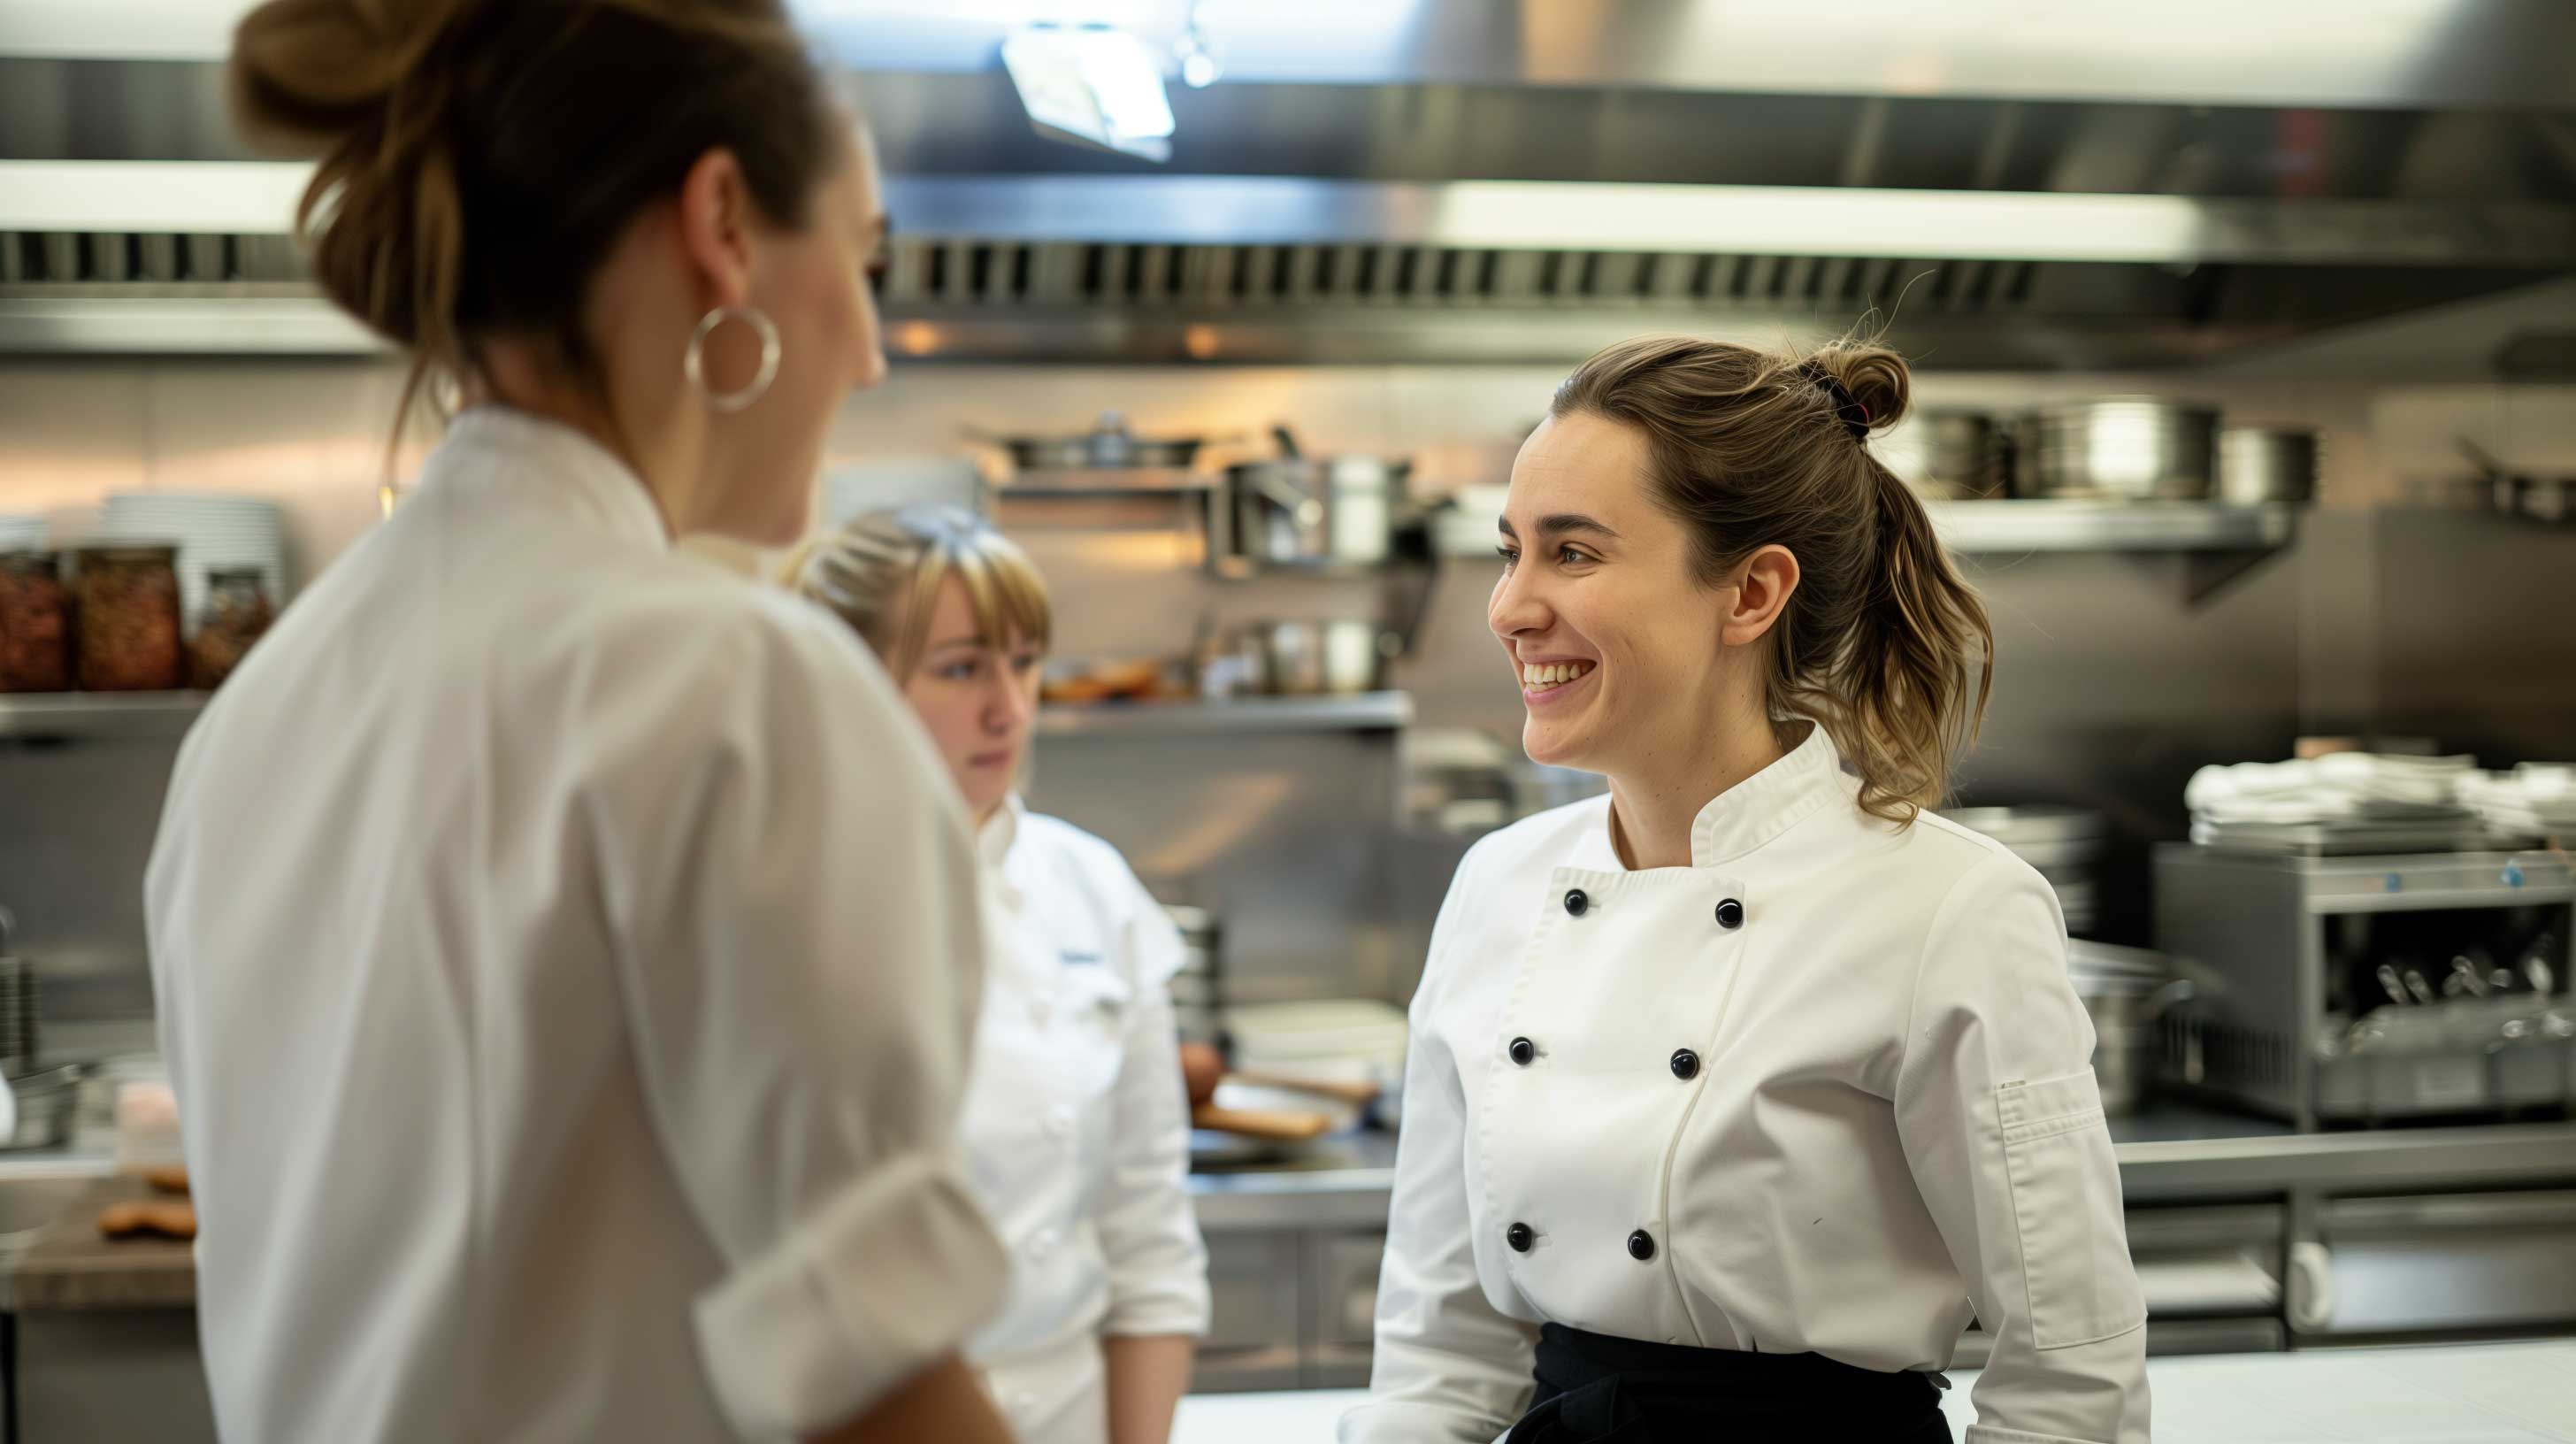 Female chefs in restaurant kitchen